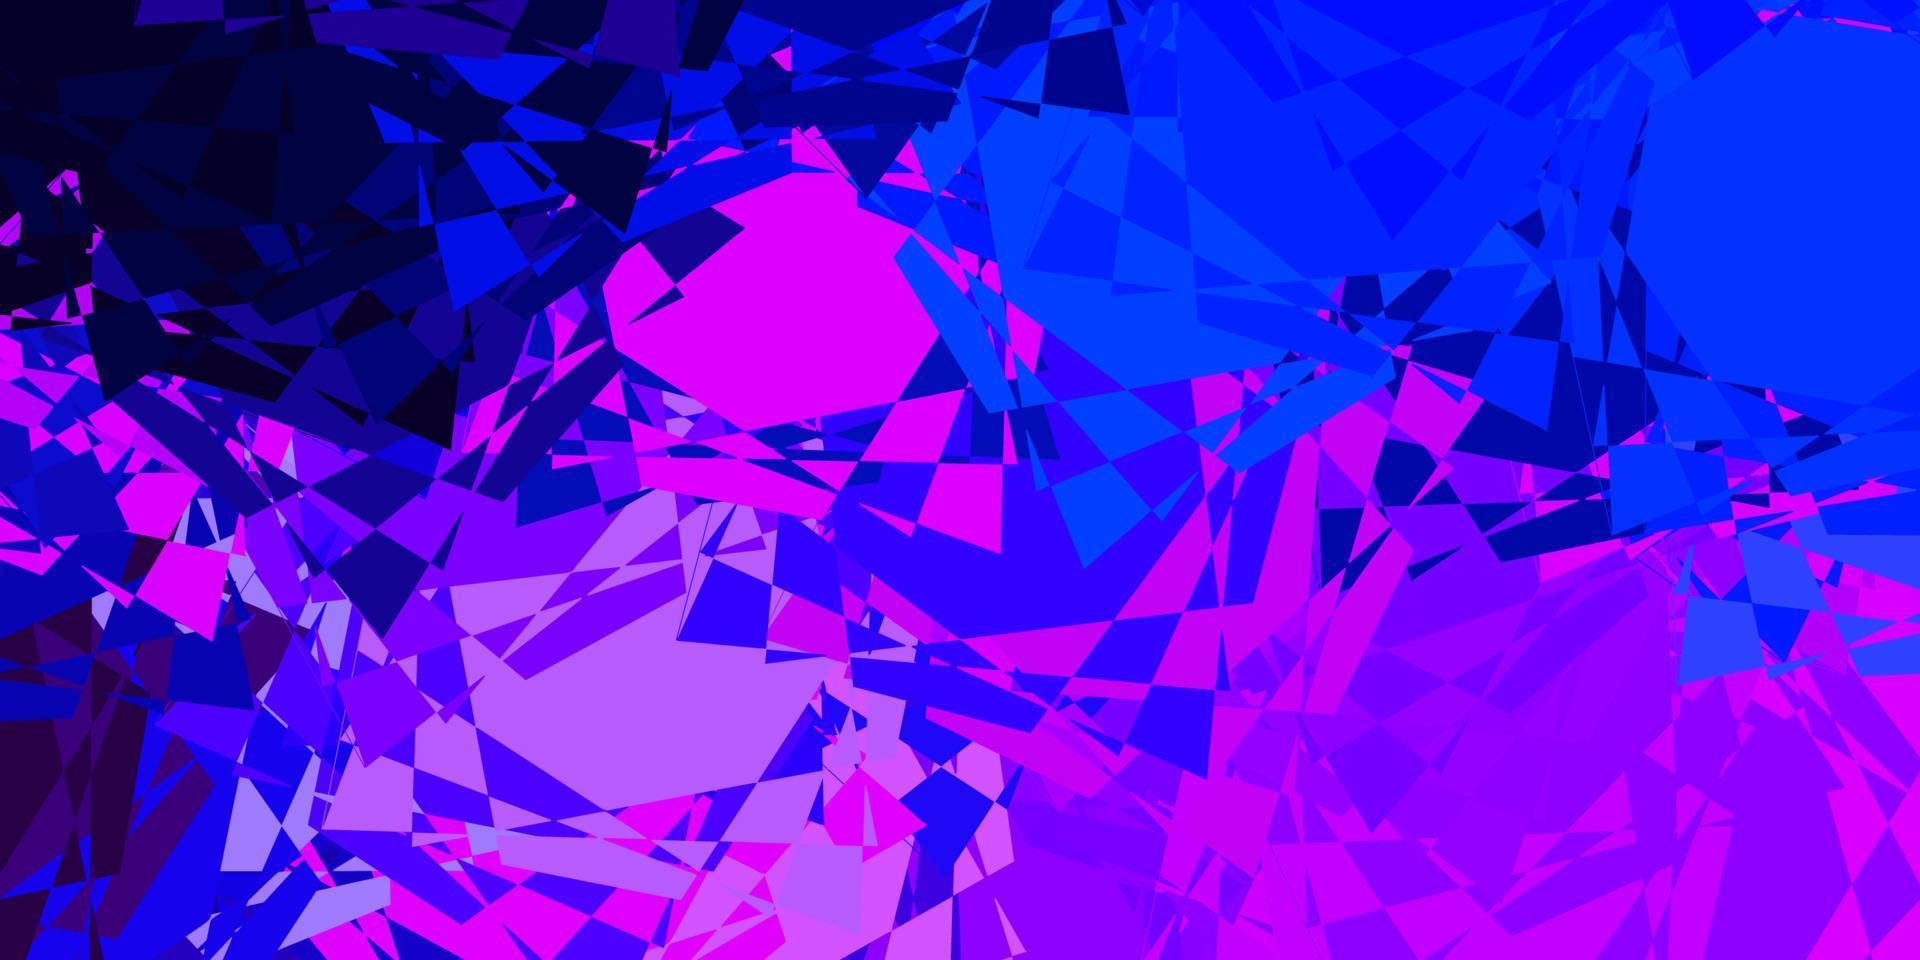 modello vettoriale rosa chiaro, blu con forme poligonali.